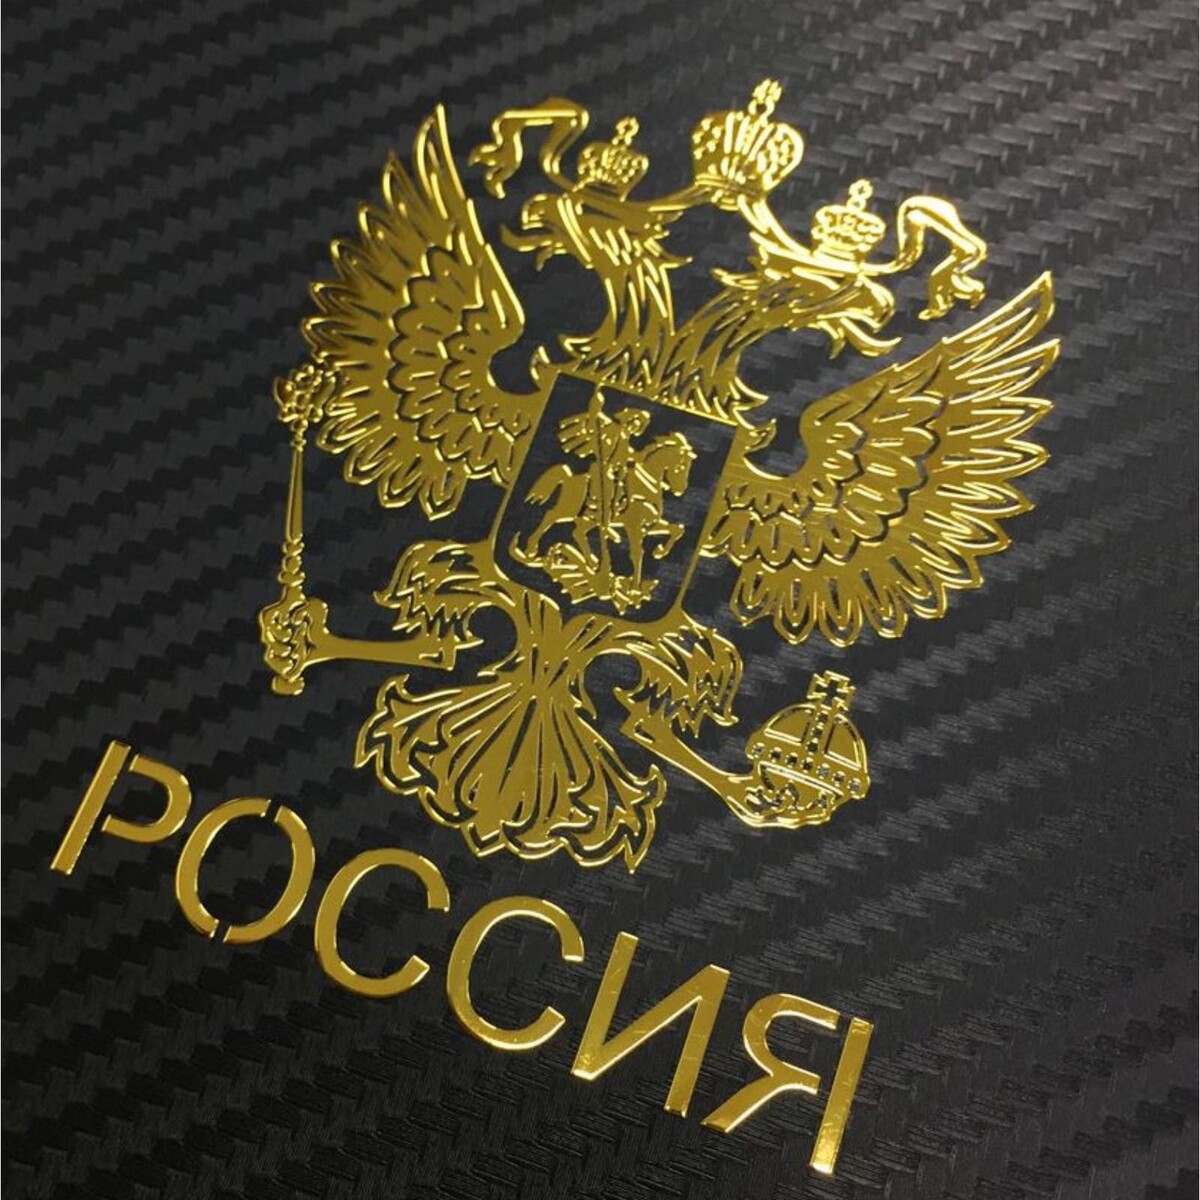 Наклейка на авто, герб россии, 9.1×7 см, золотистый россии ивовая ржавь